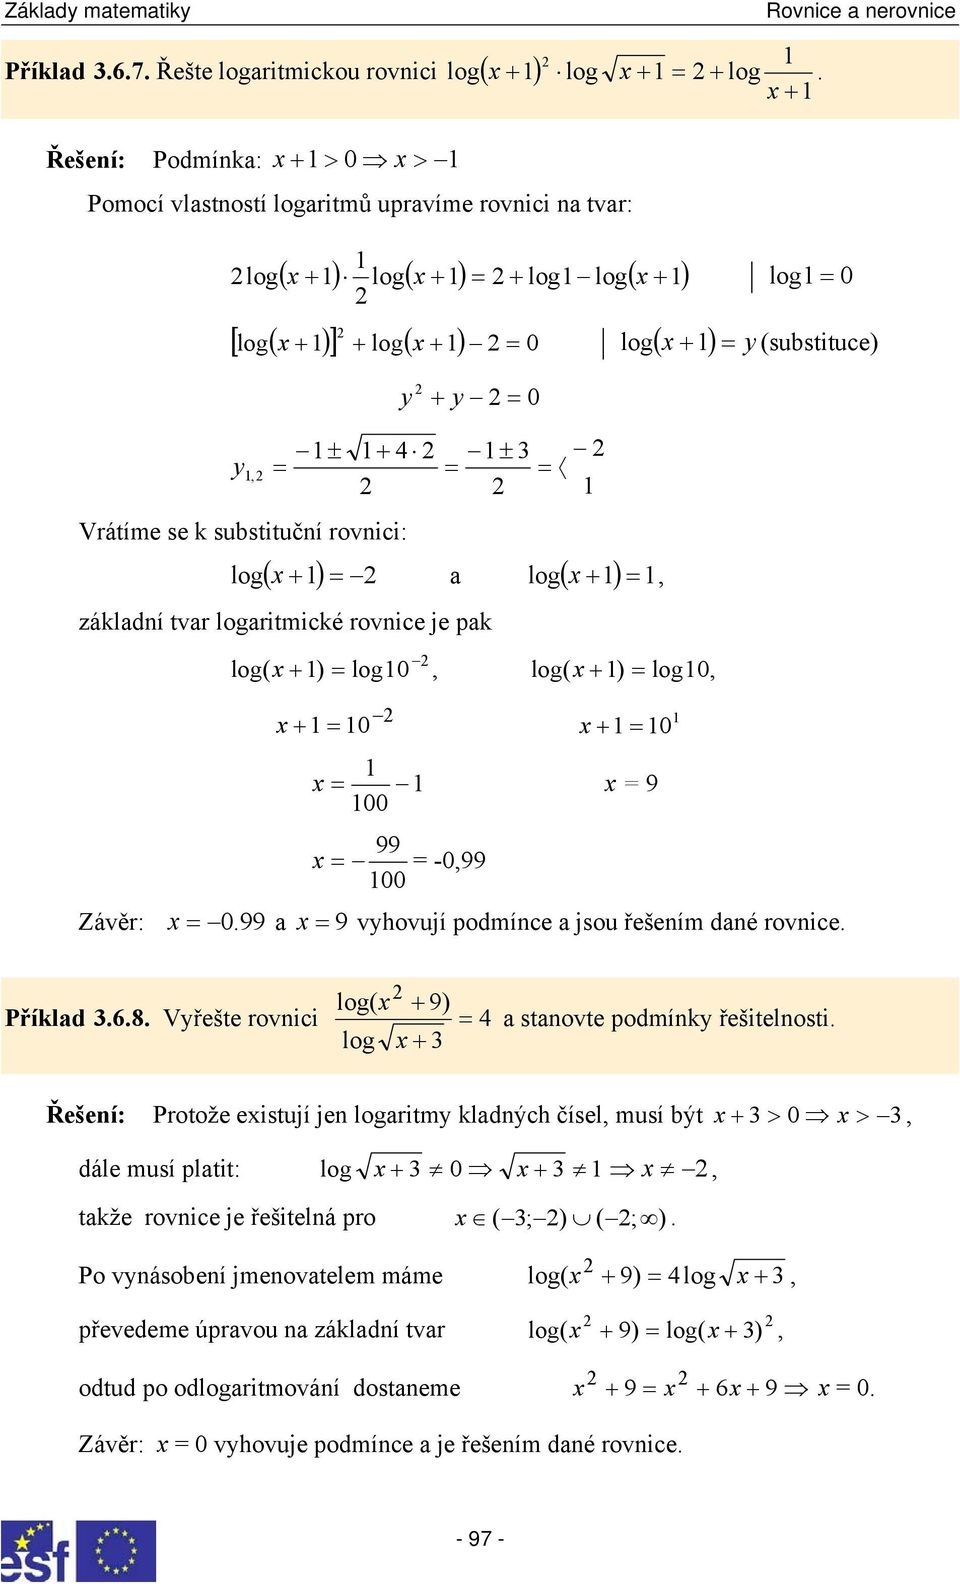 vyhovují podmínce jsou řešením dné rovnice log( + 9) Příkld 8 Vyřešte rovnici log + stnovte podmínky řešitelnosti Řešení: Protože eistují jen logritmy kldných čísel musí být + > 0 > dále musí pltit: